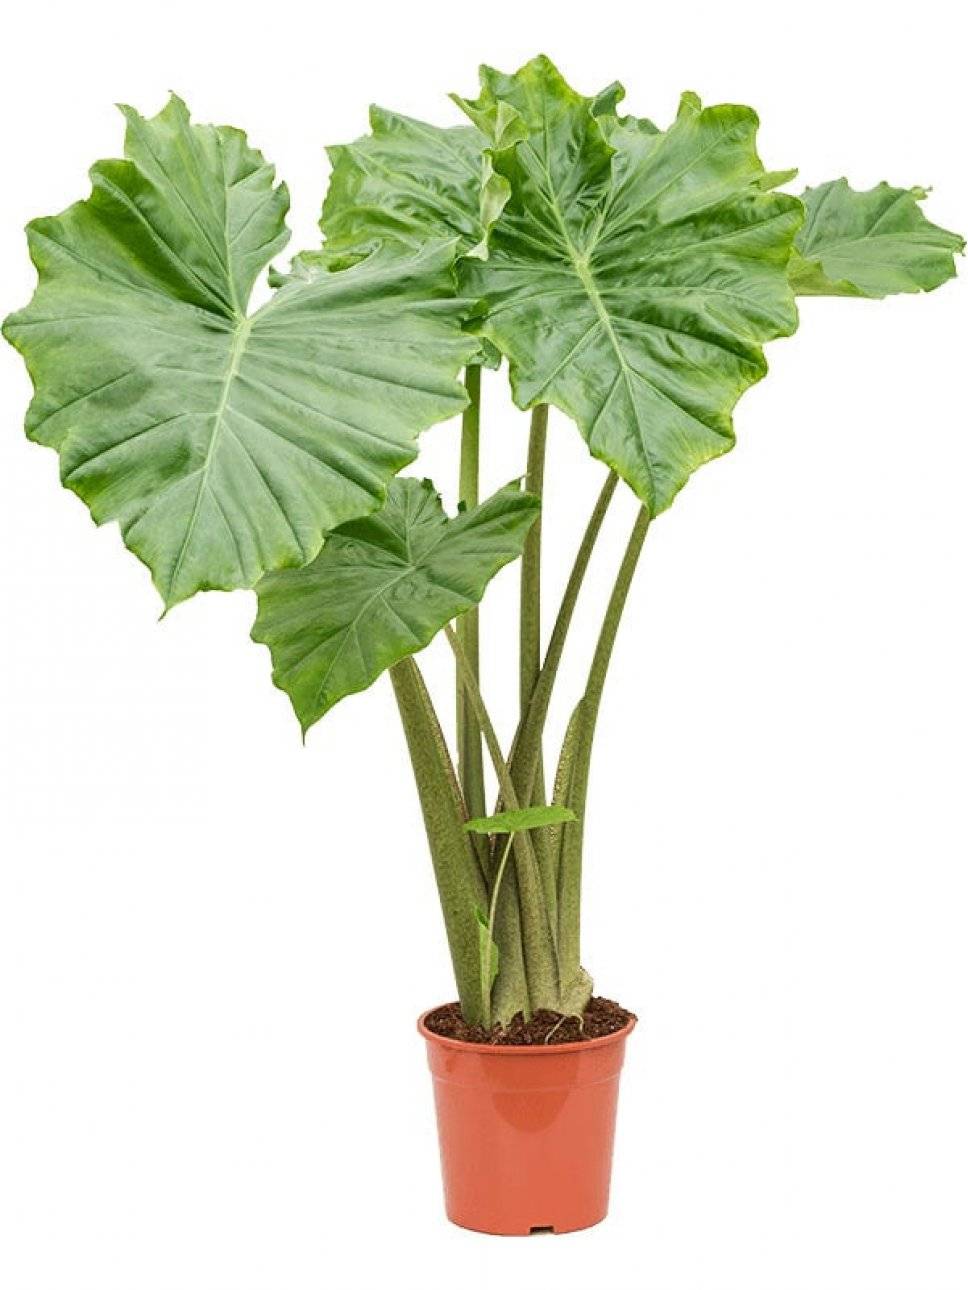 Алоказия медно-красная - комнатное растение: фото и описание цветка, правила посадки, ухода и размножения